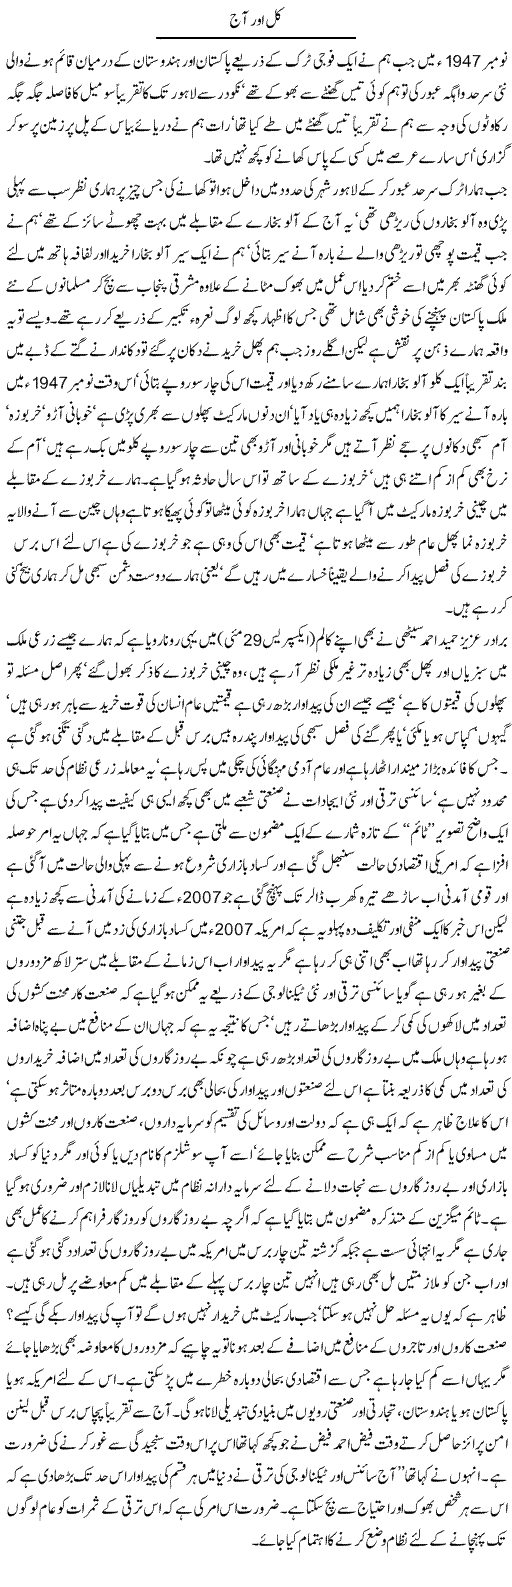 Creation of Pakistan Express Column Hameed Akhtar 3 June 2011